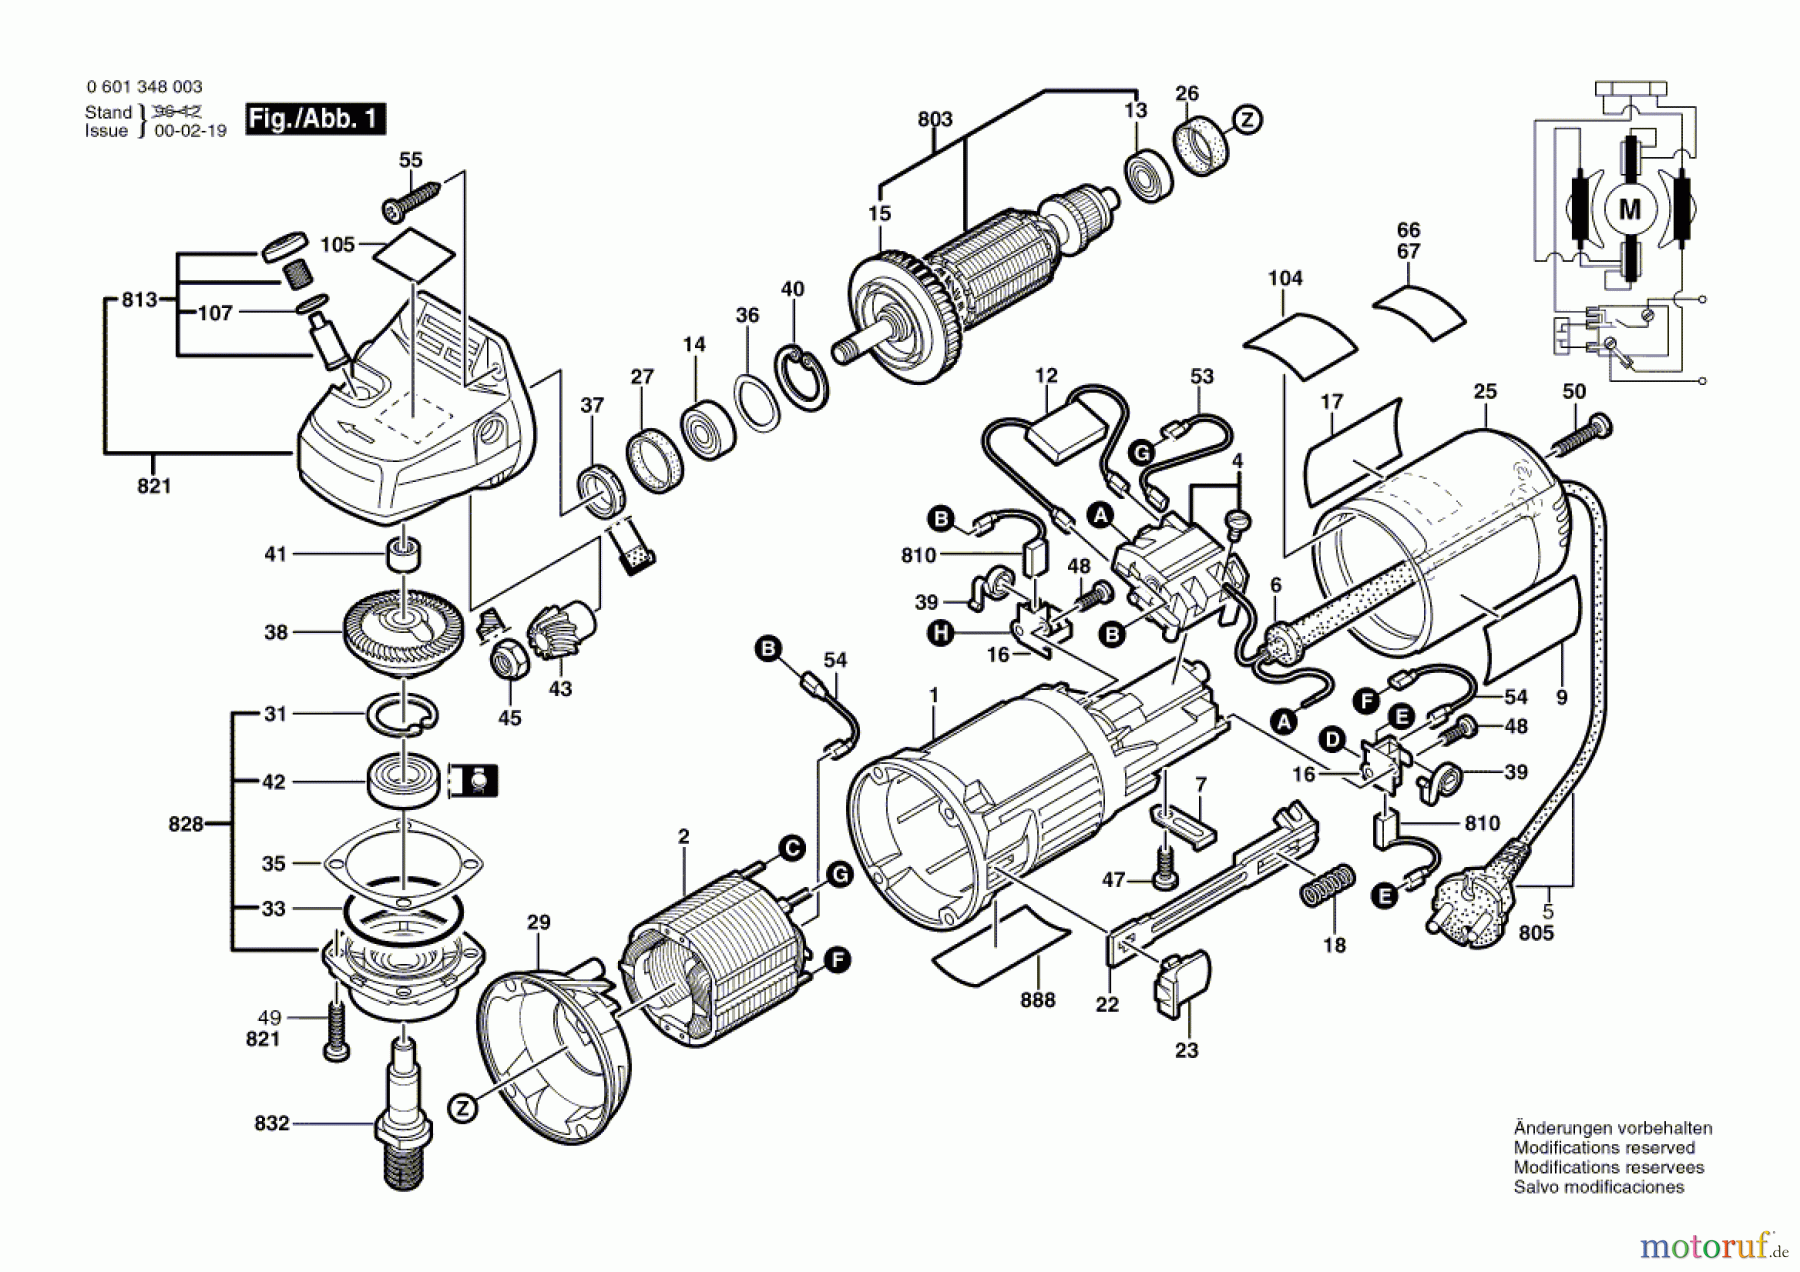  Bosch Werkzeug Winkelschleifer GEWS 1348.0 Seite 1